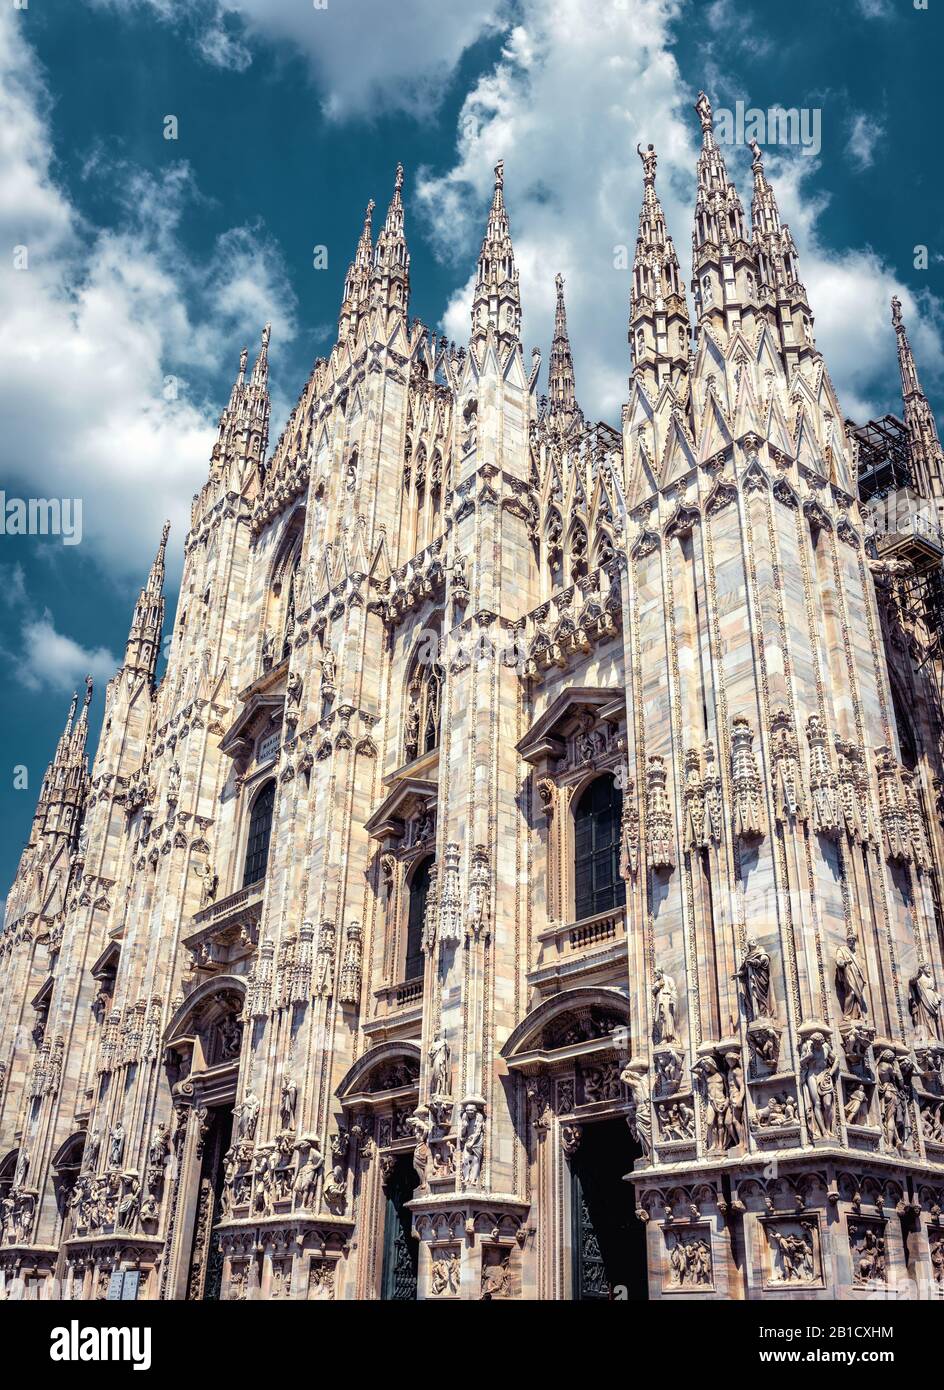 La célèbre cathédrale de Milan (Duomo di Milano) à Milan, en Italie. Le Duomo de Milan est la plus grande église d'Italie et la cinquième plus grande au monde. Banque D'Images